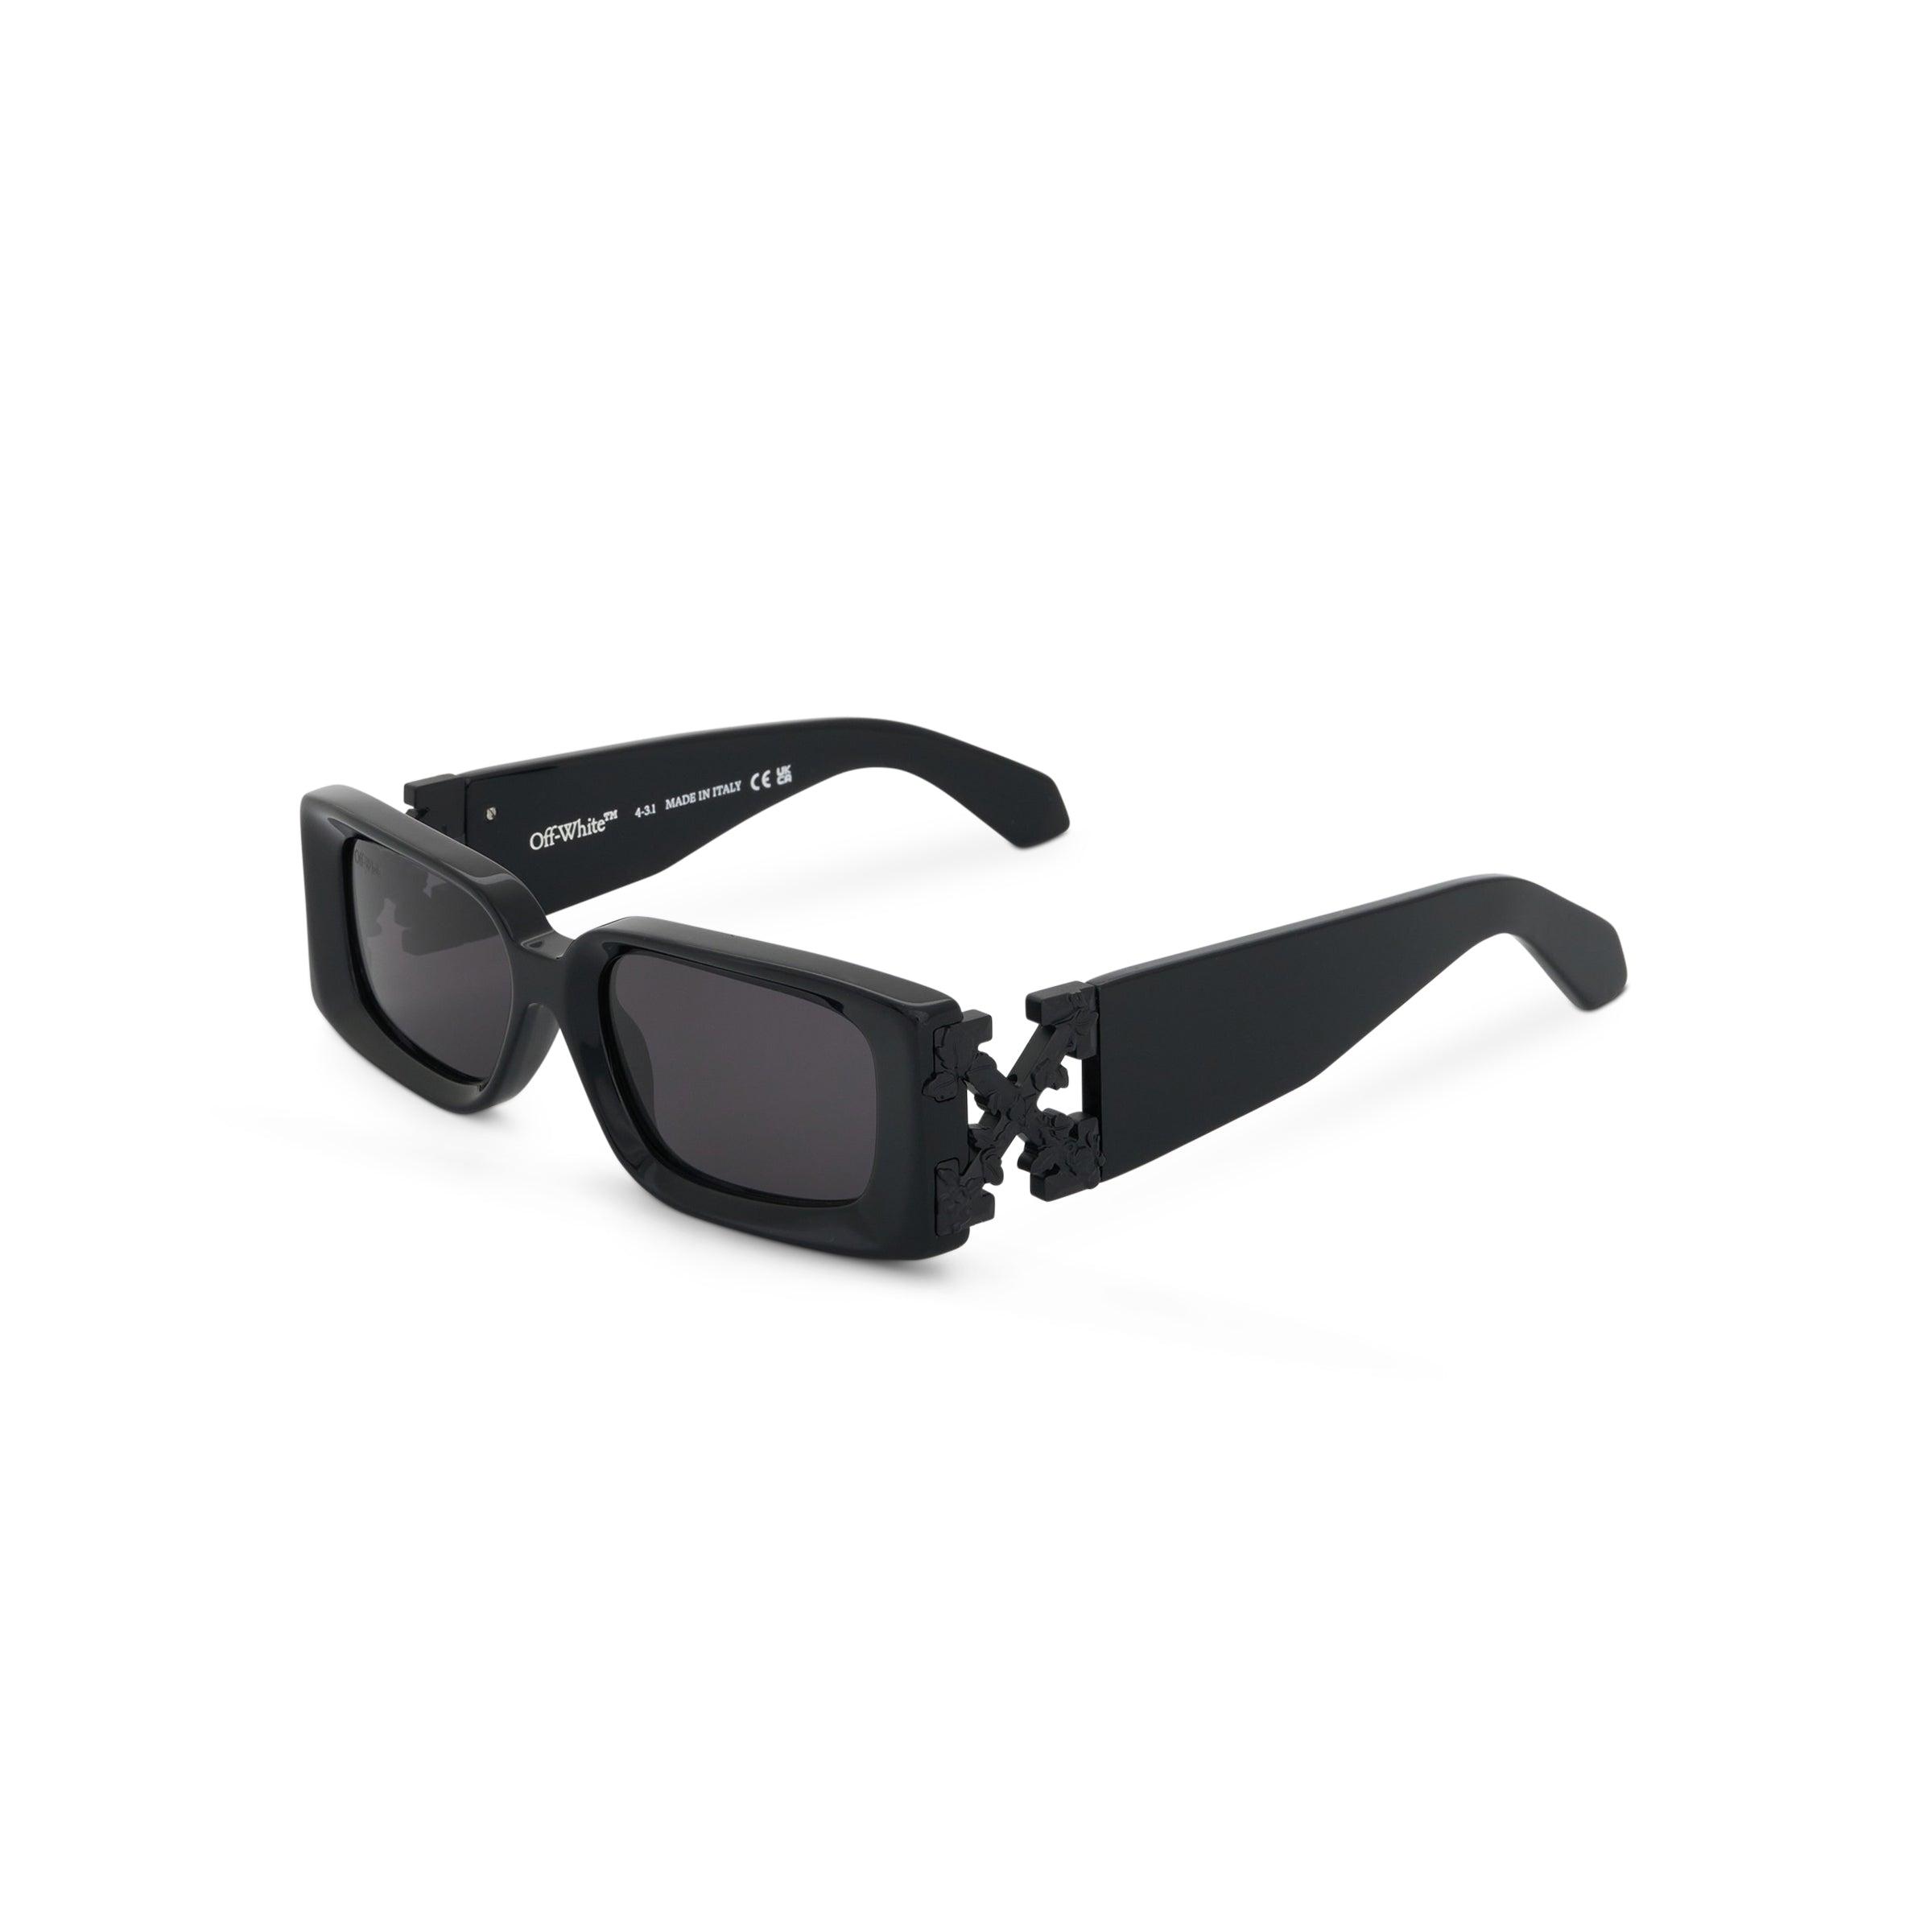 Off-White c/o Virgil Abloh Arthur Sunglasses in Black